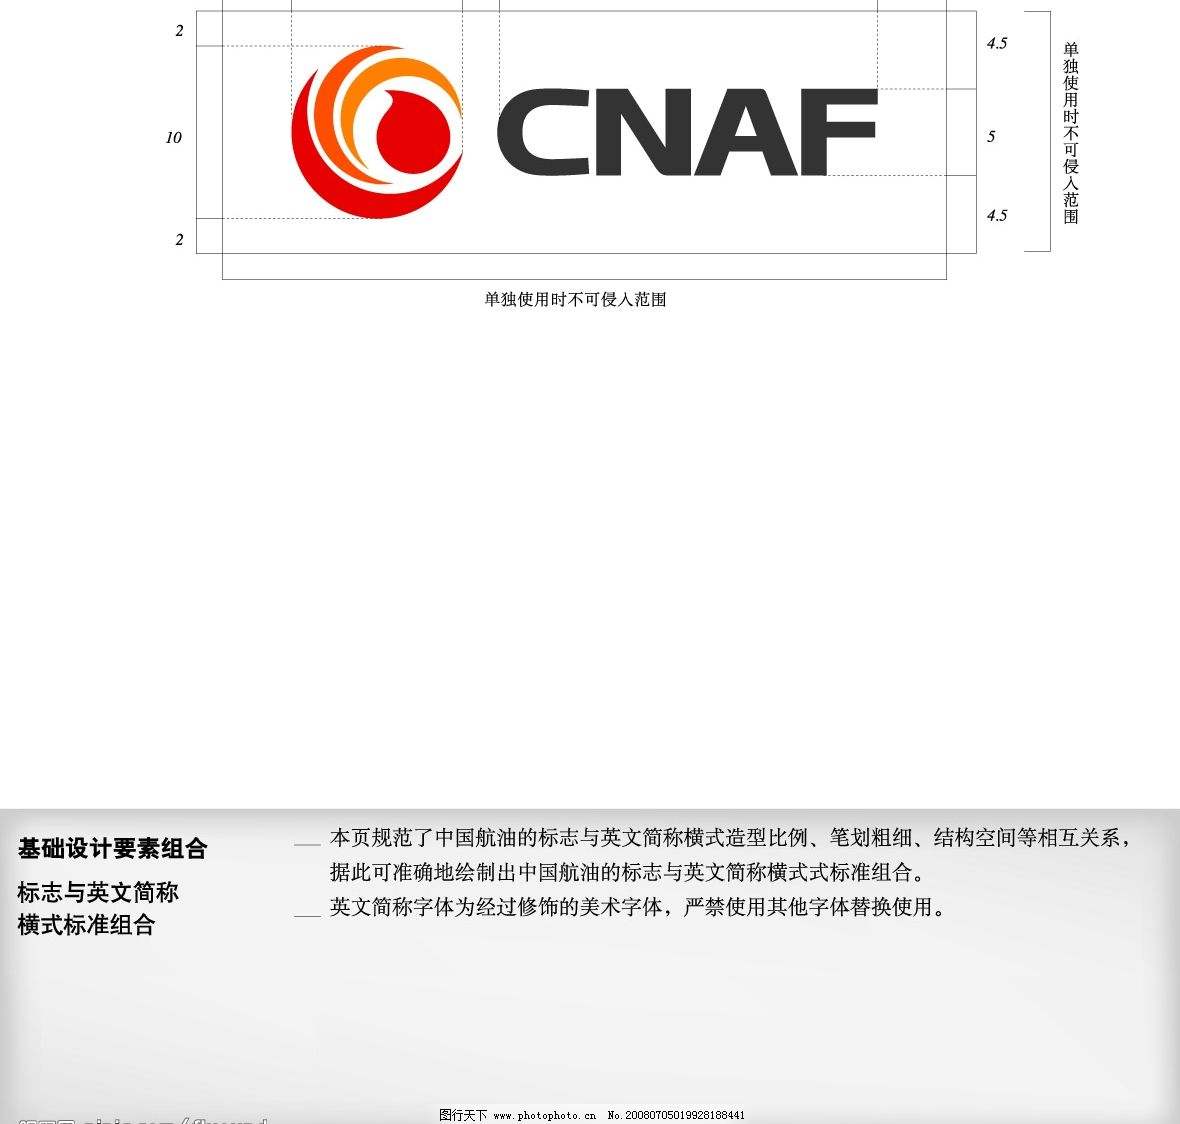 中国航油 CNAF 标识英文简称图片